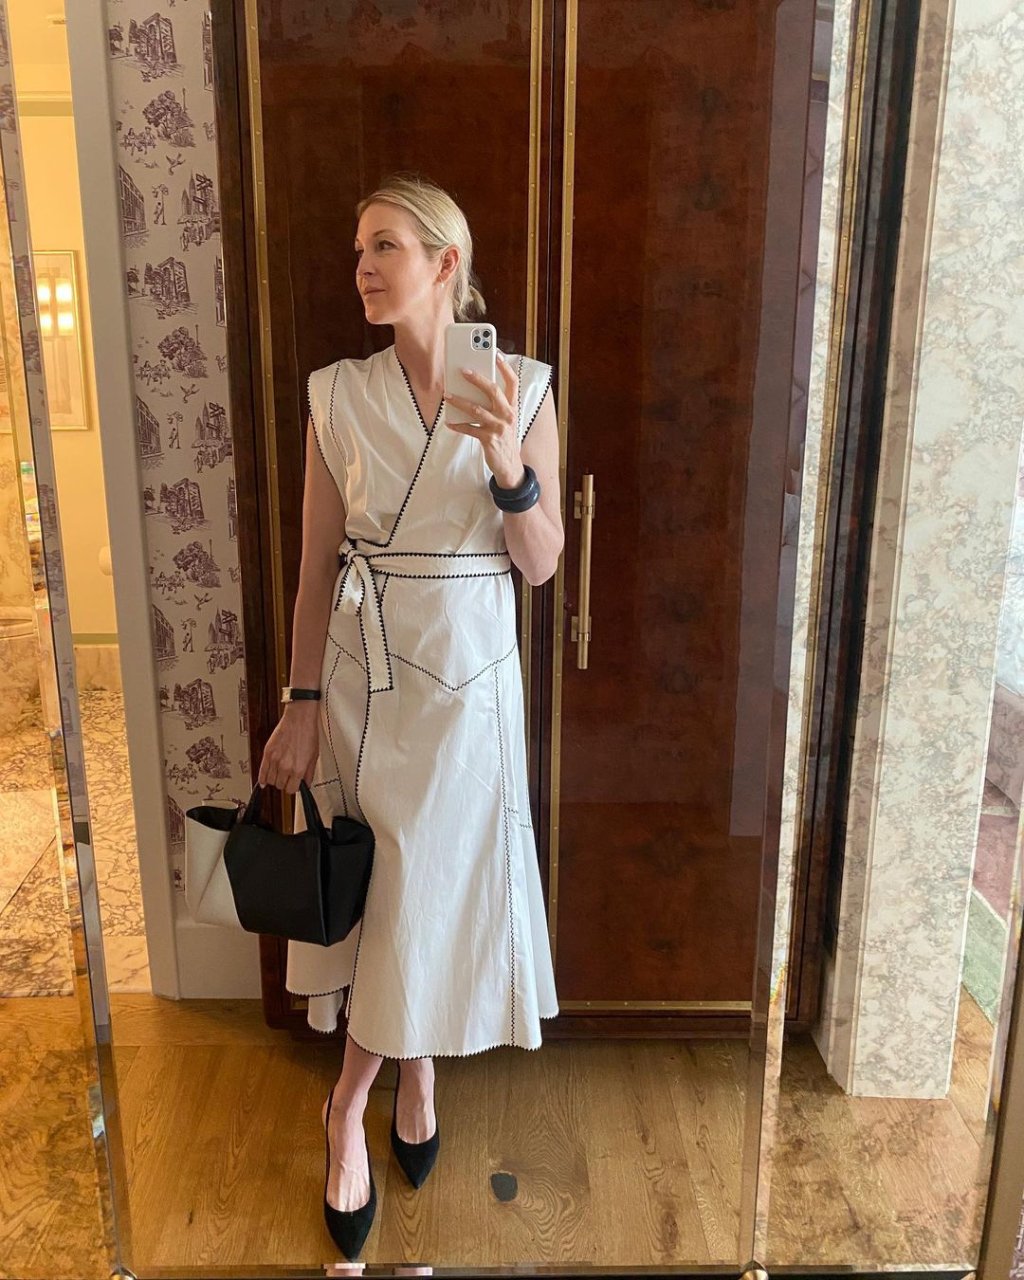 Kelly Rutherford com vestido branco e em selfie feita no espelho